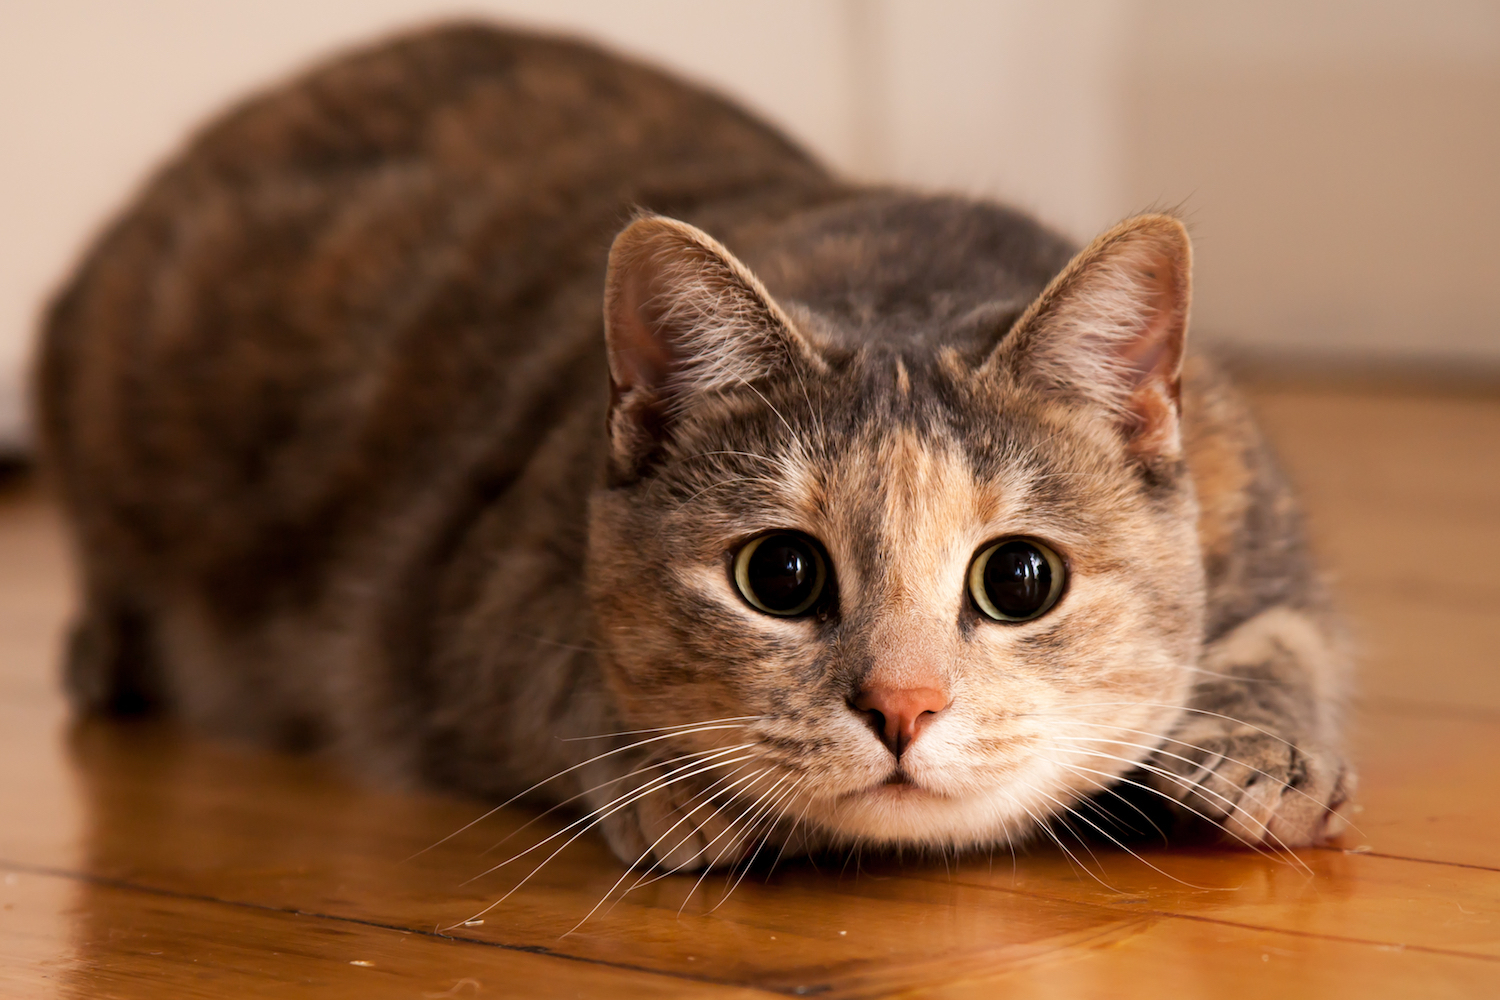 Учёный объяснил, почему кошки трясут задними конечностями перед тем, как наброситься на добычу